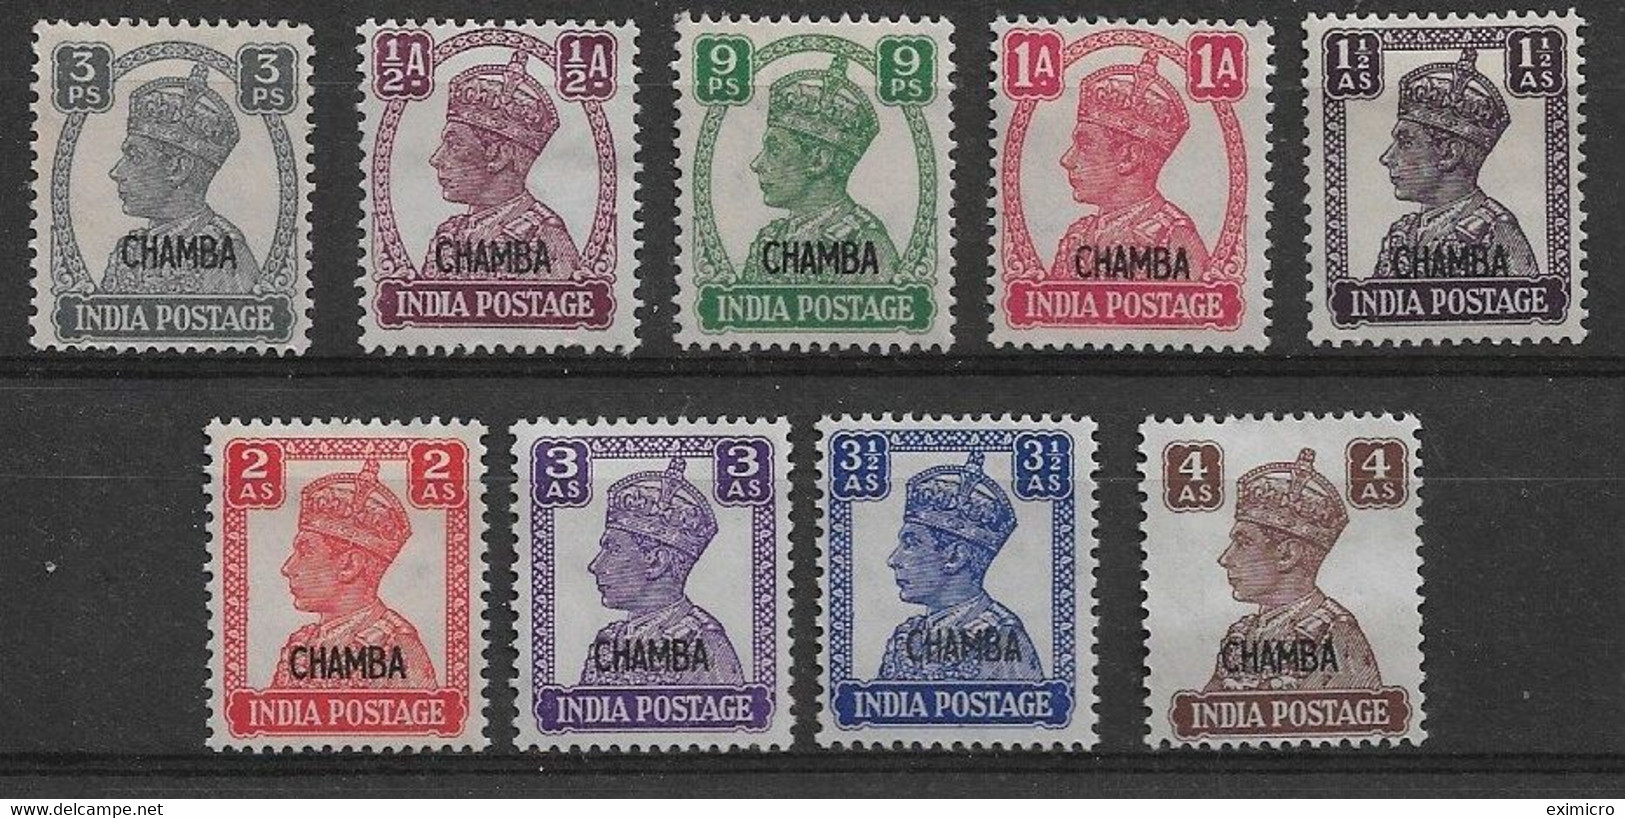 INDIA - CHAMBA 1940 - 1943 VALUES TO 4a SG 108/116 MOUNTED MINT Cat £48+ - Chamba